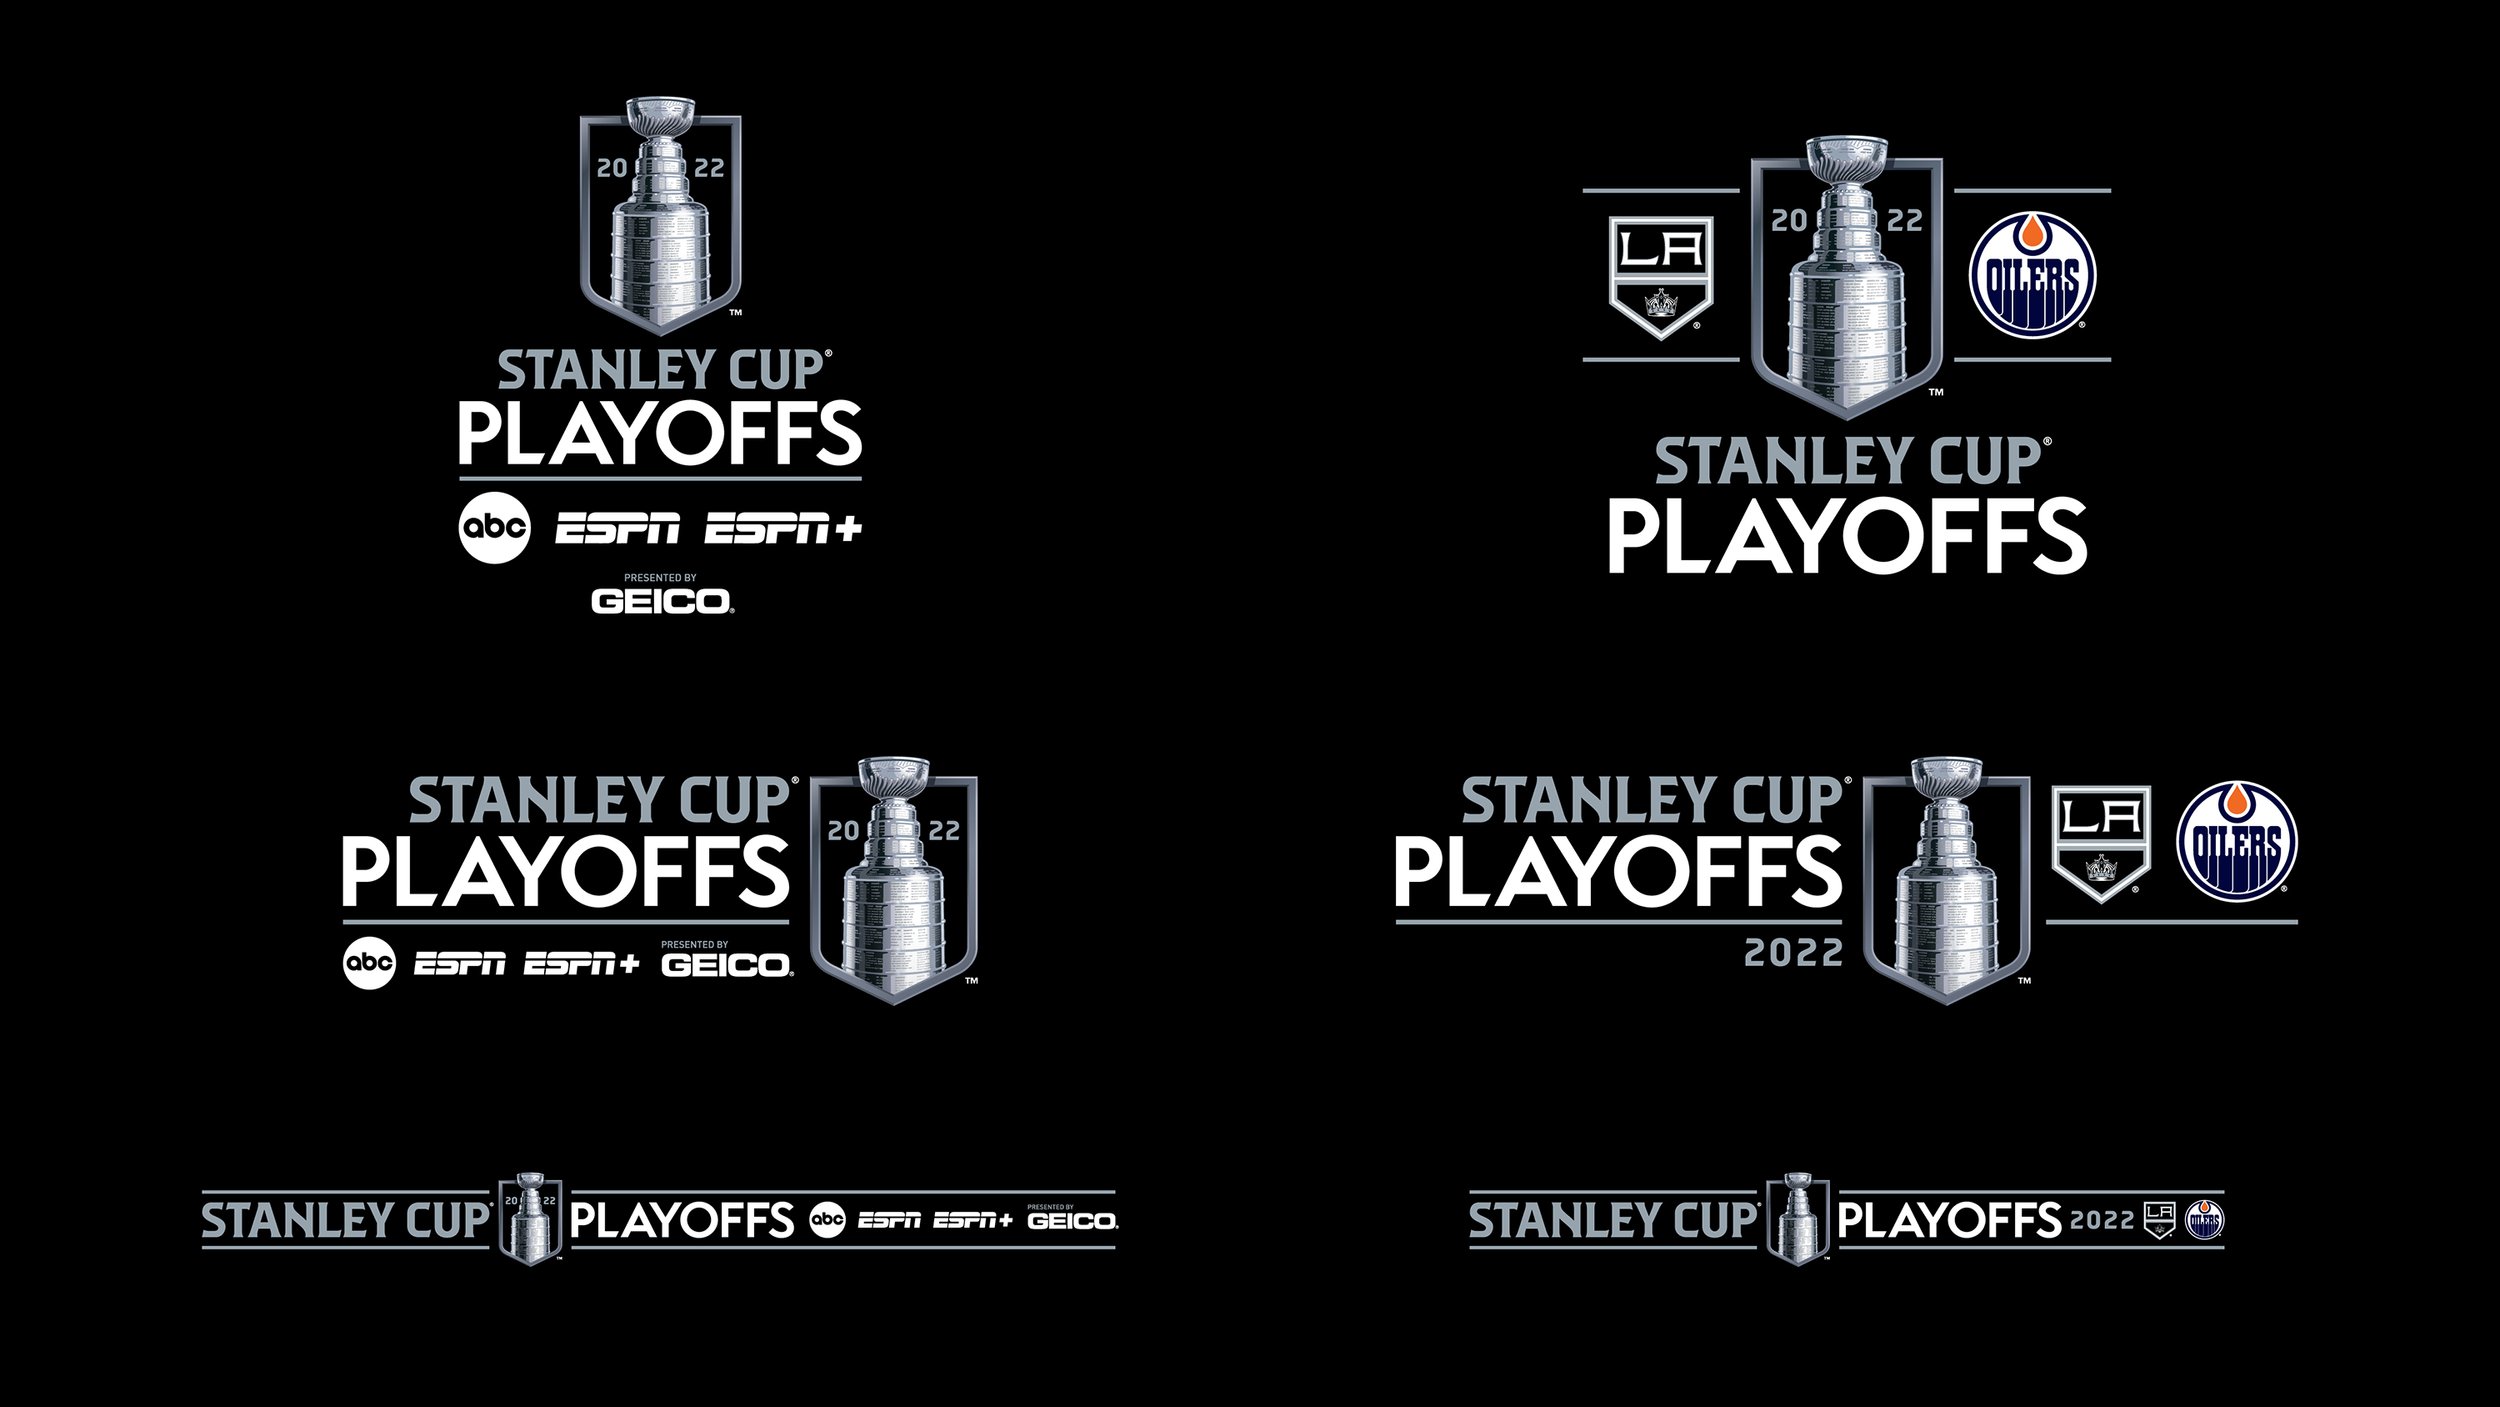 Stanley Cup Finals, Logopedia